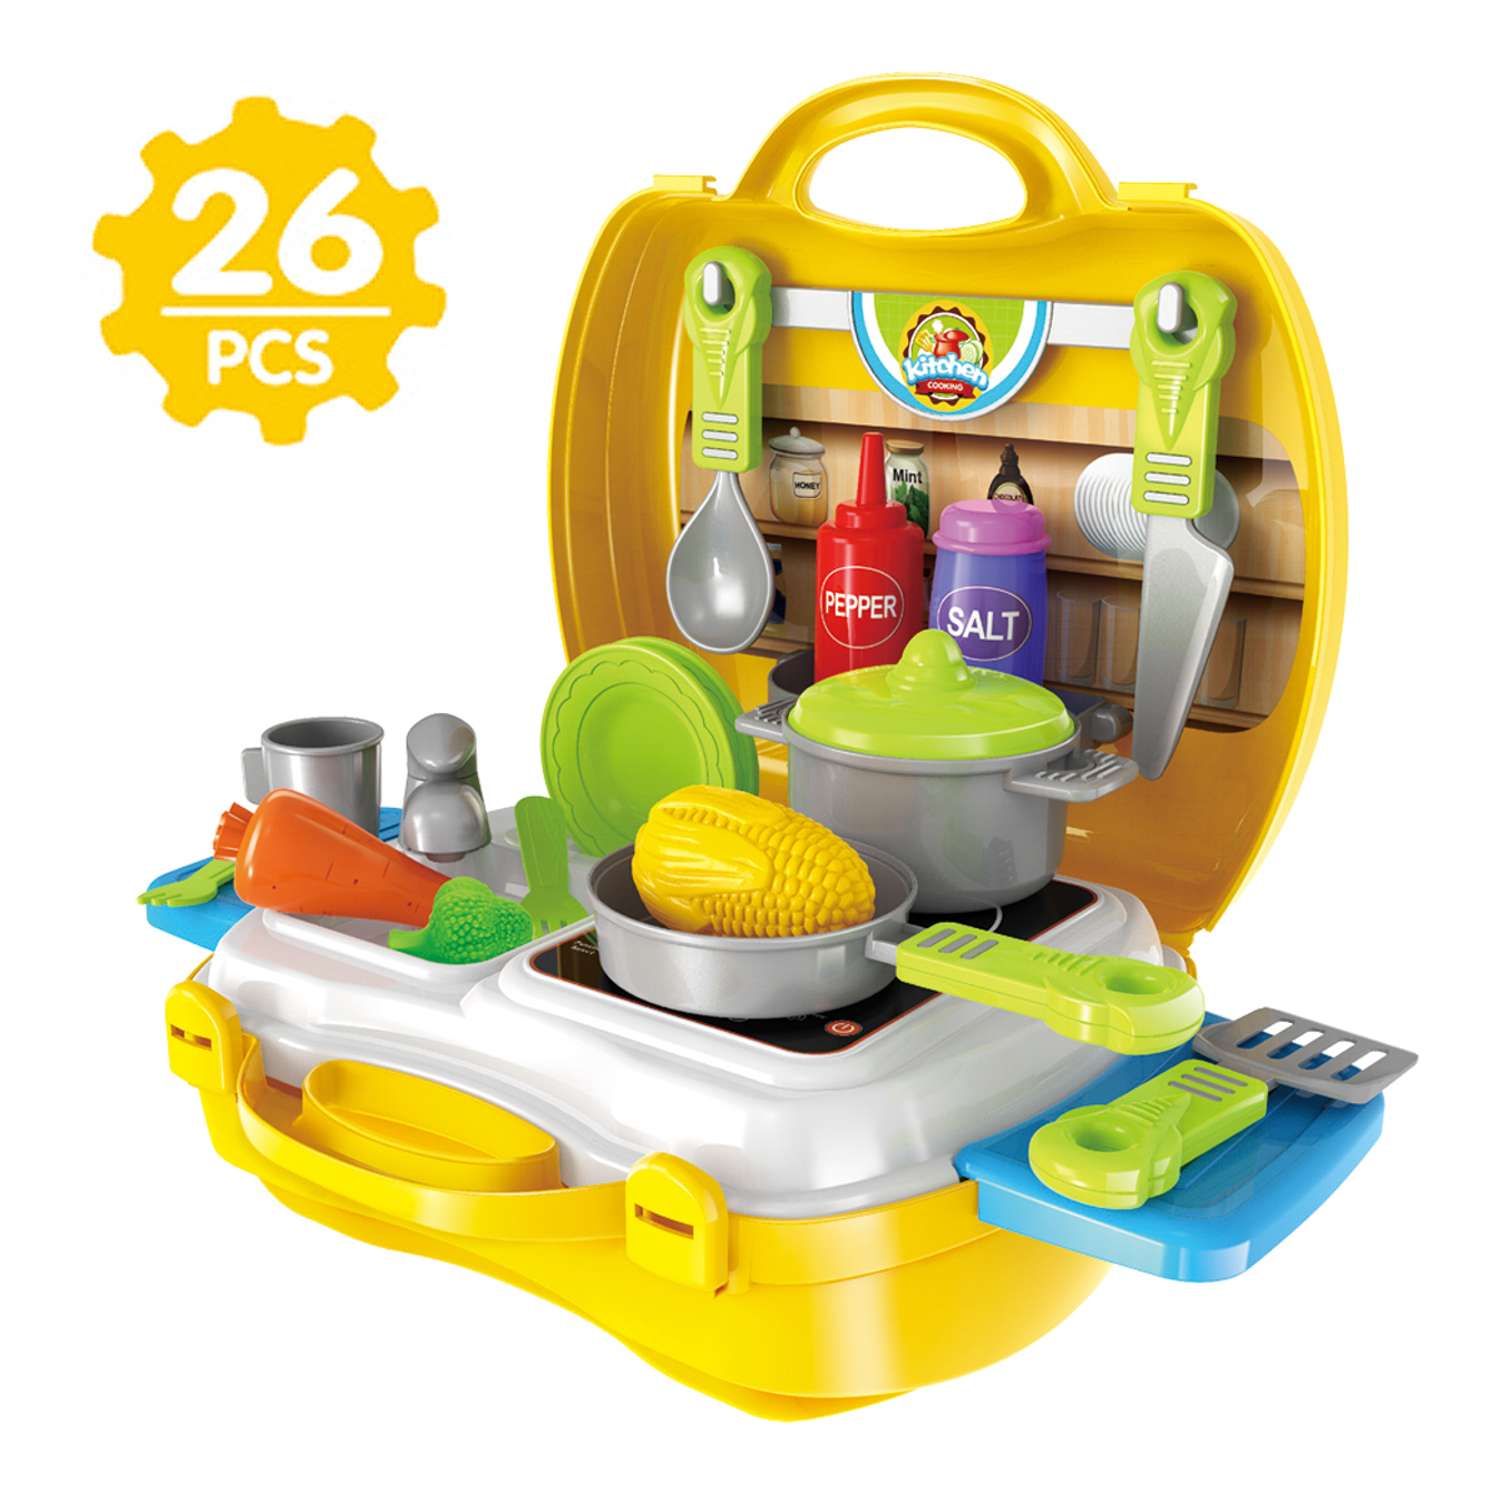 Детская кухня Amico 26 предметов в чемодане - фото 1